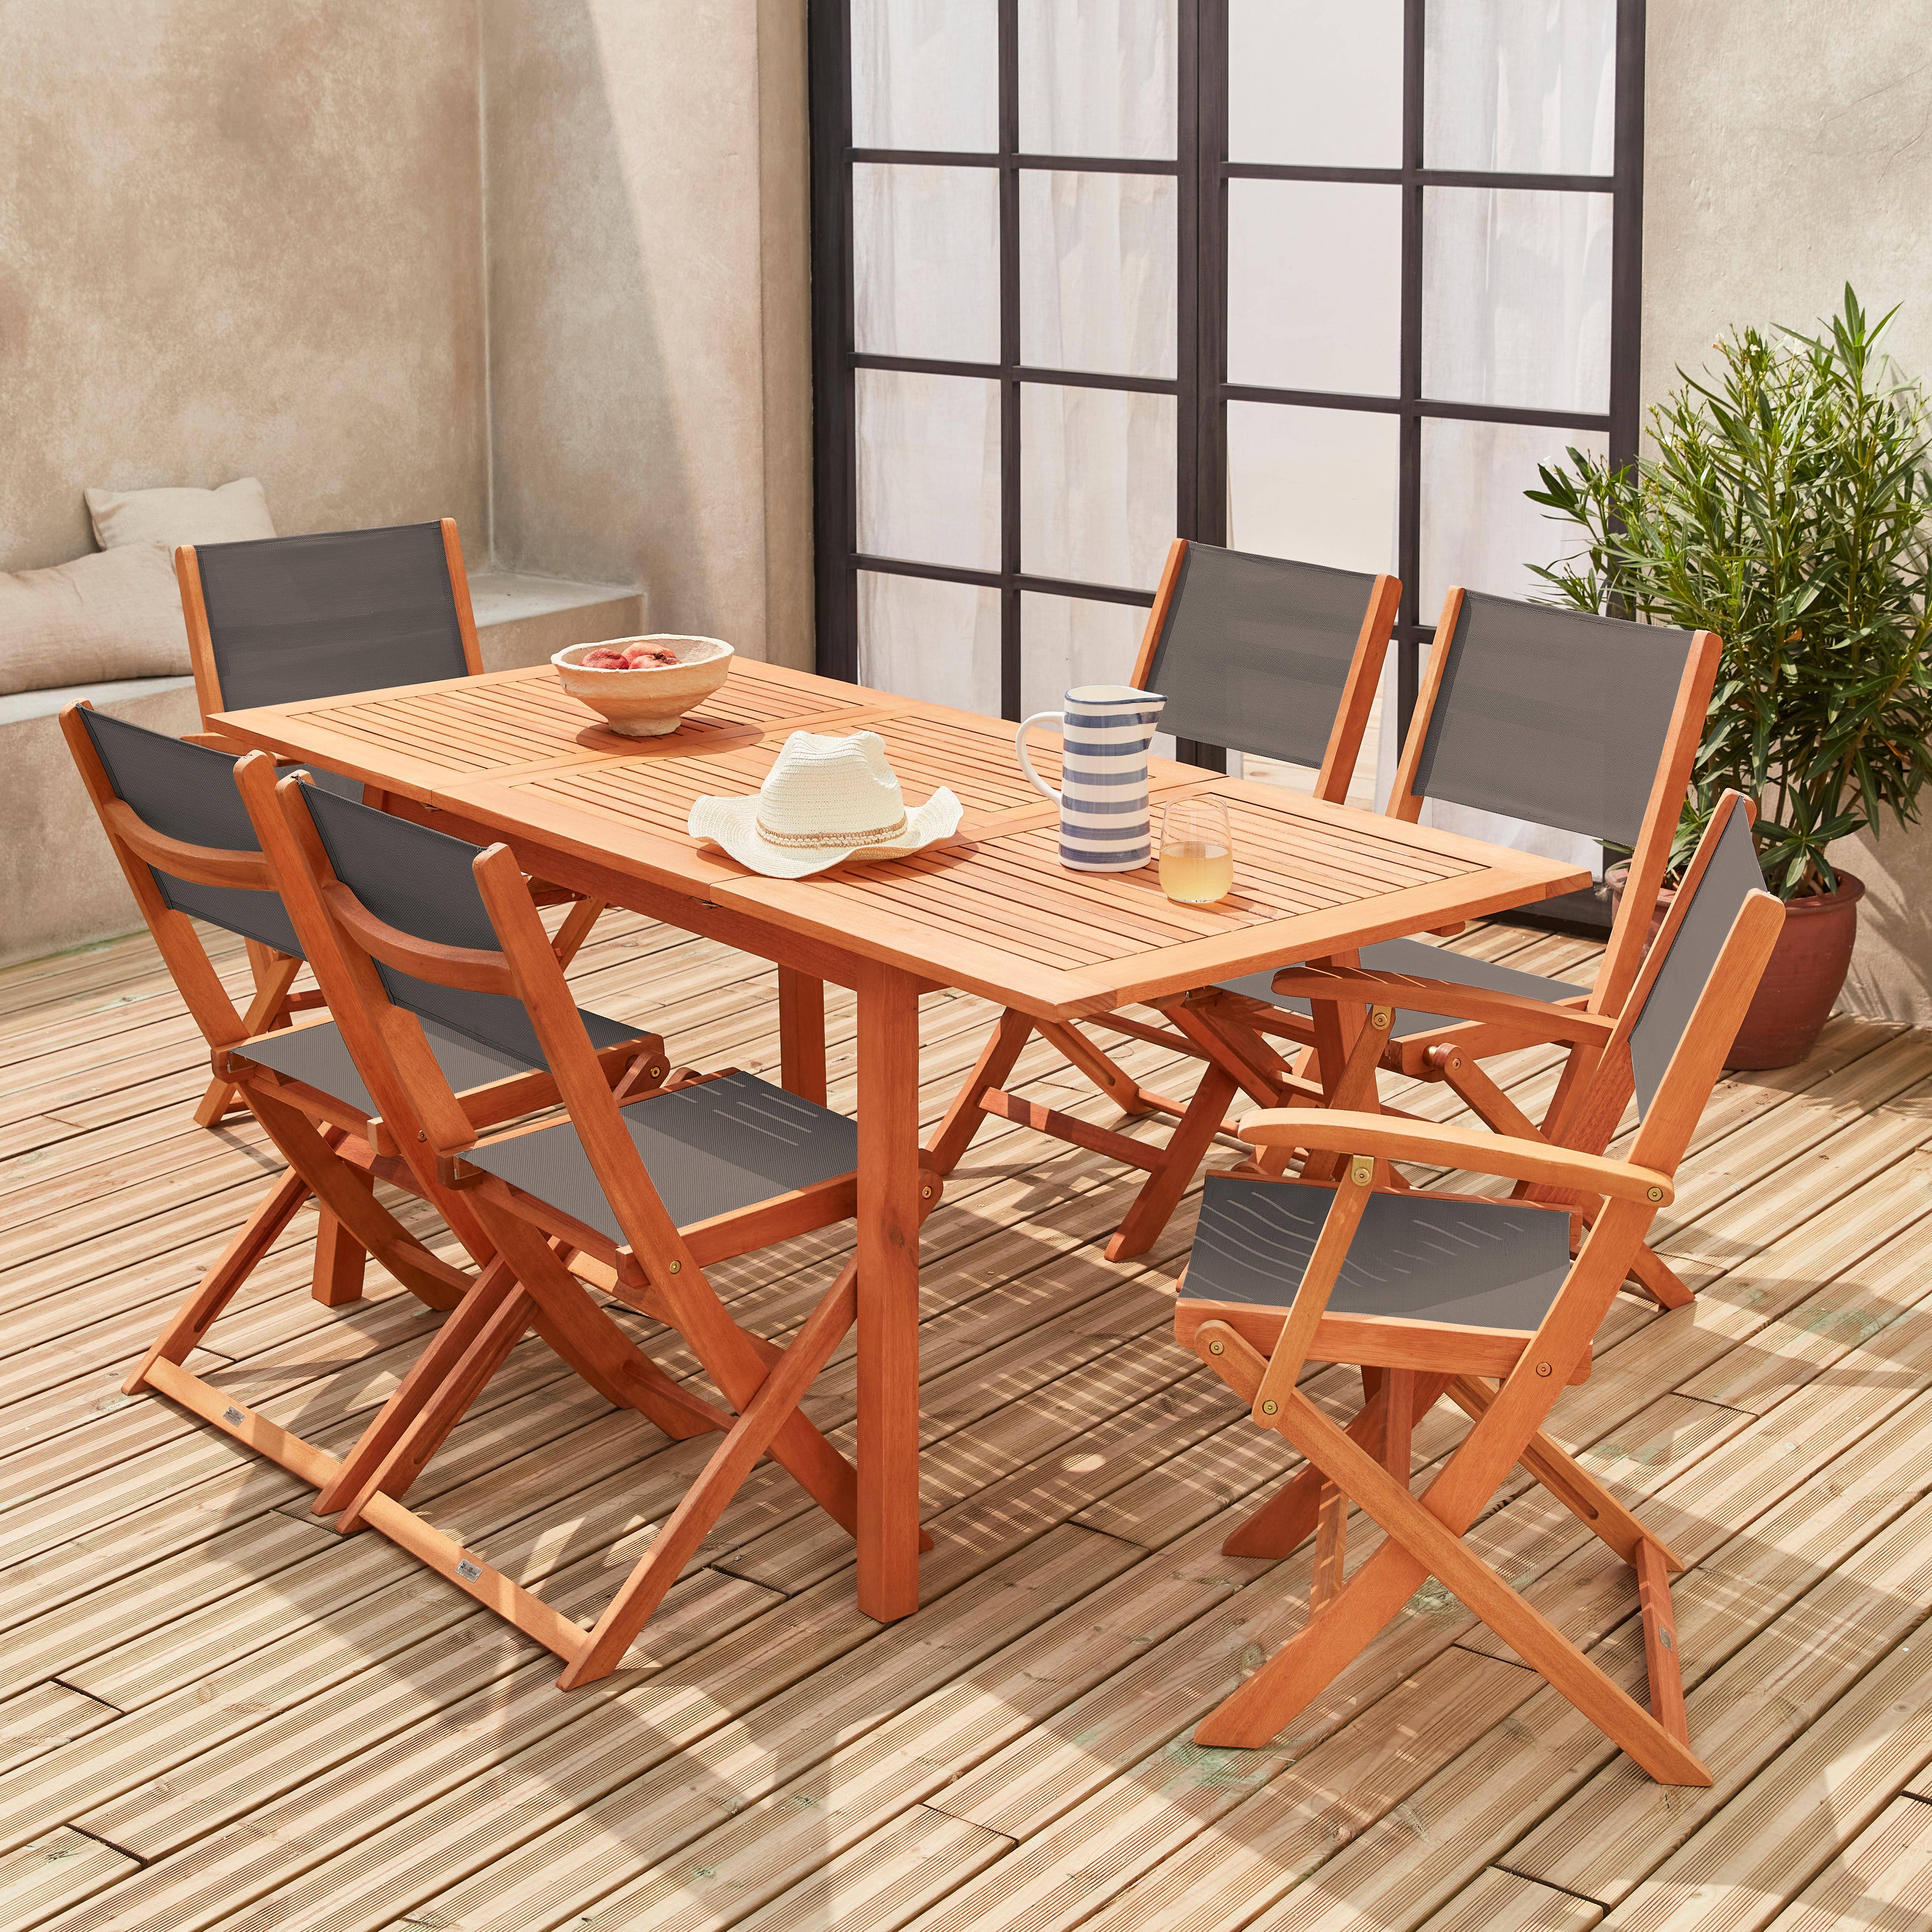 Ausziehbare Gartenmöbel aus Holz - Almeria - Tisch 120/180 cm mit Verlängerung, 2 Sesseln und 4 Stühlen aus geöltem FSC-Eukalyptusholz und anthrazitfarbenes Textilene Photo2